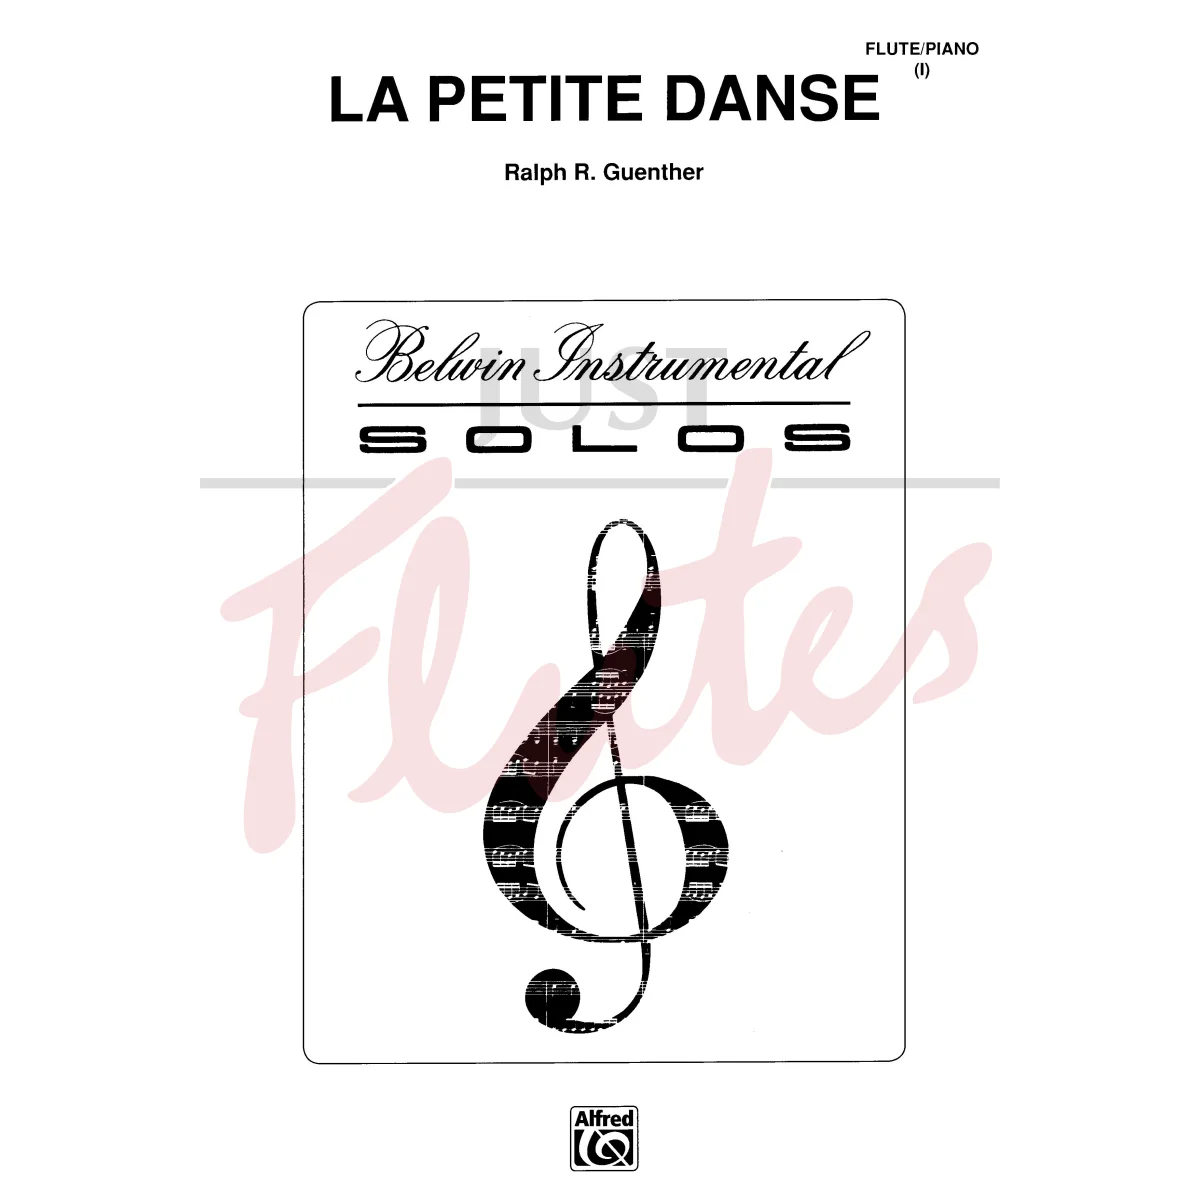 La Petite Dance for Flute and Piano